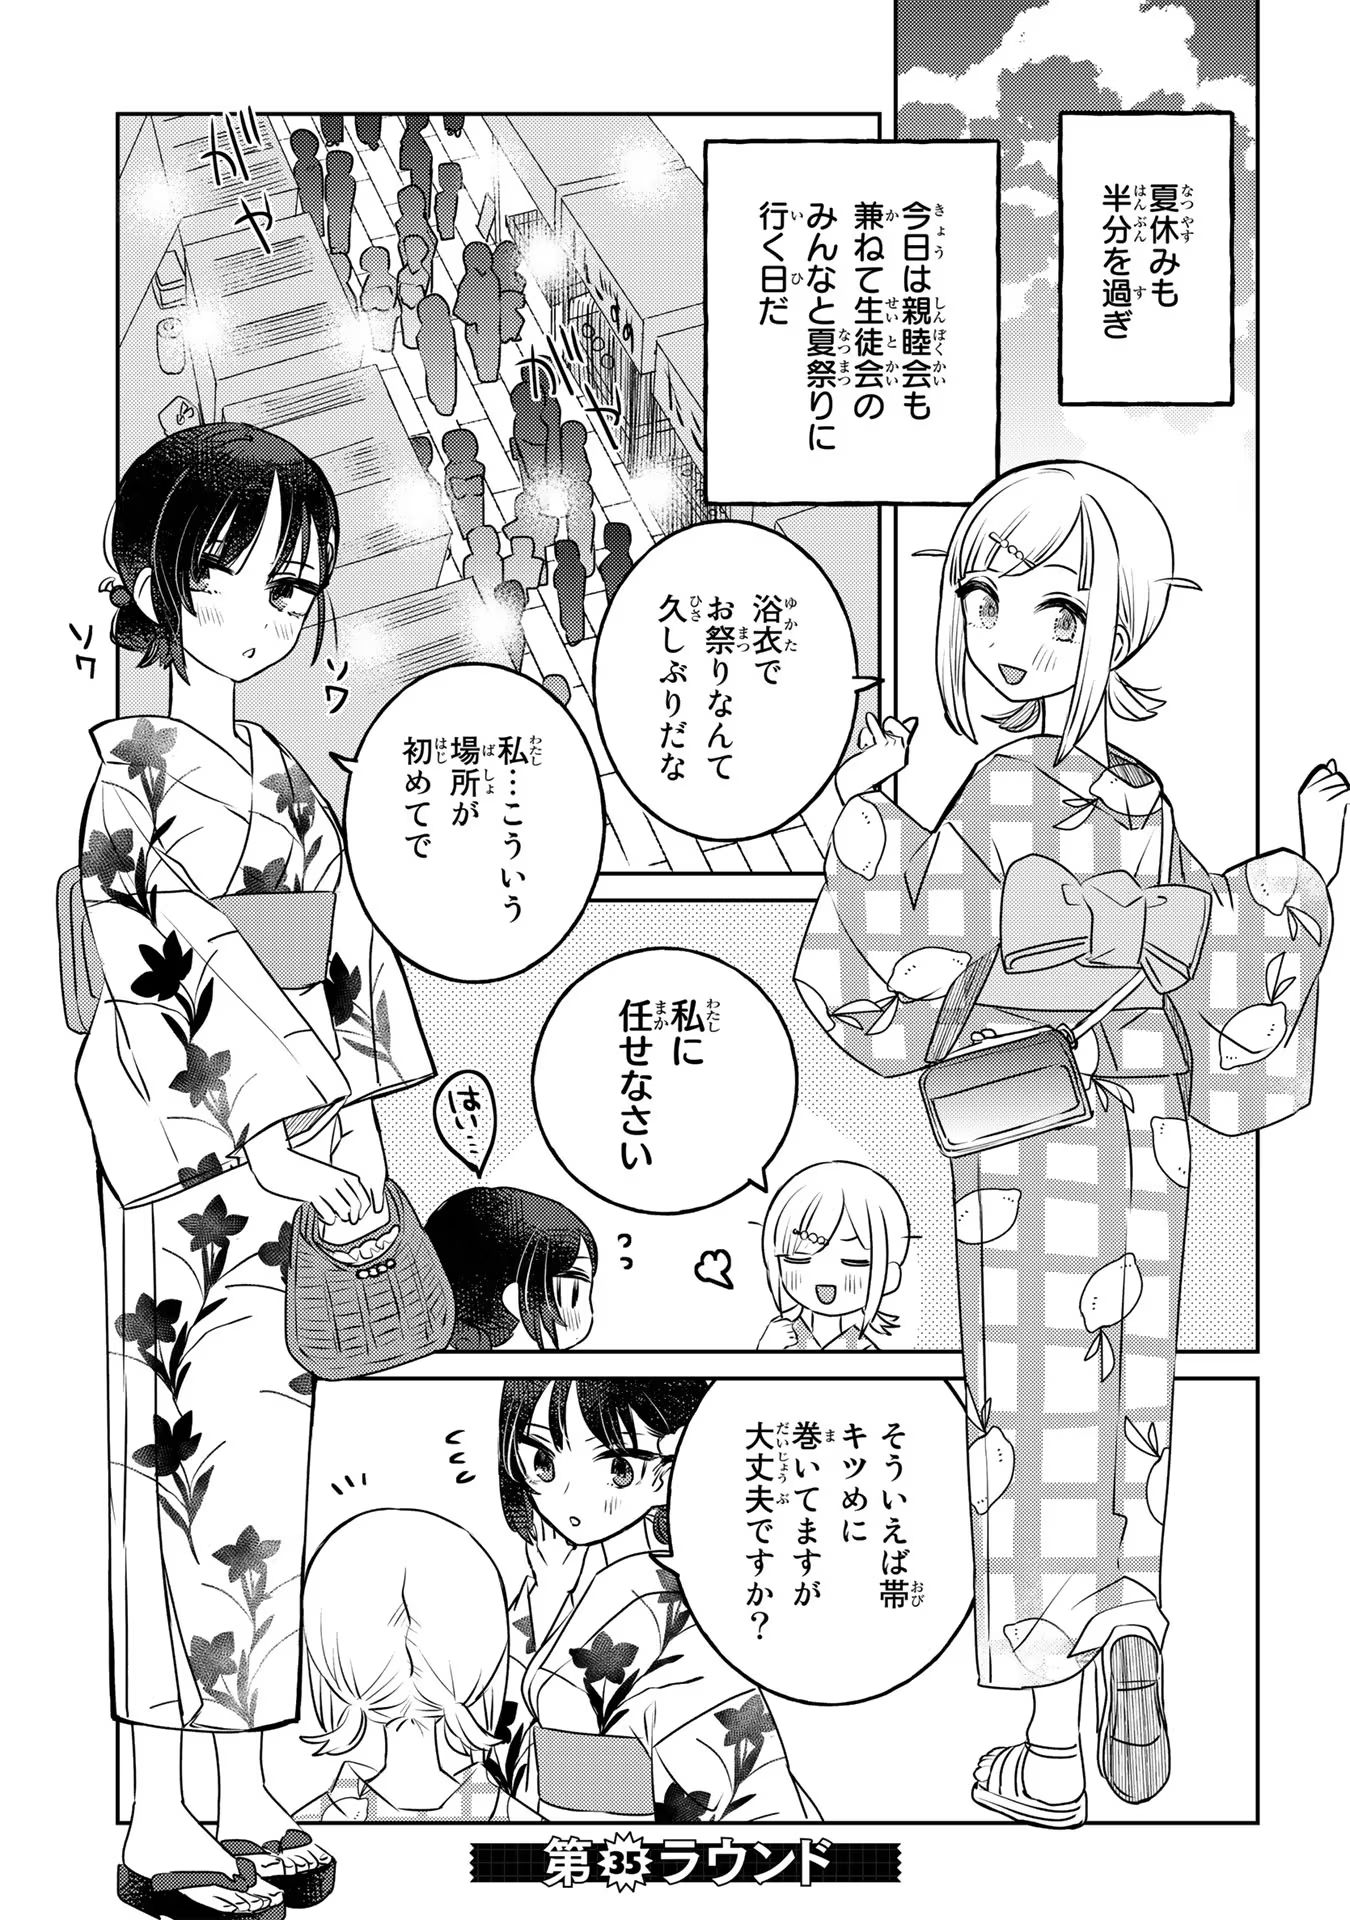 Ane ni Naritai Gishi VS Yuri ni Naritai Gimai - Chapter 35 - Page 1